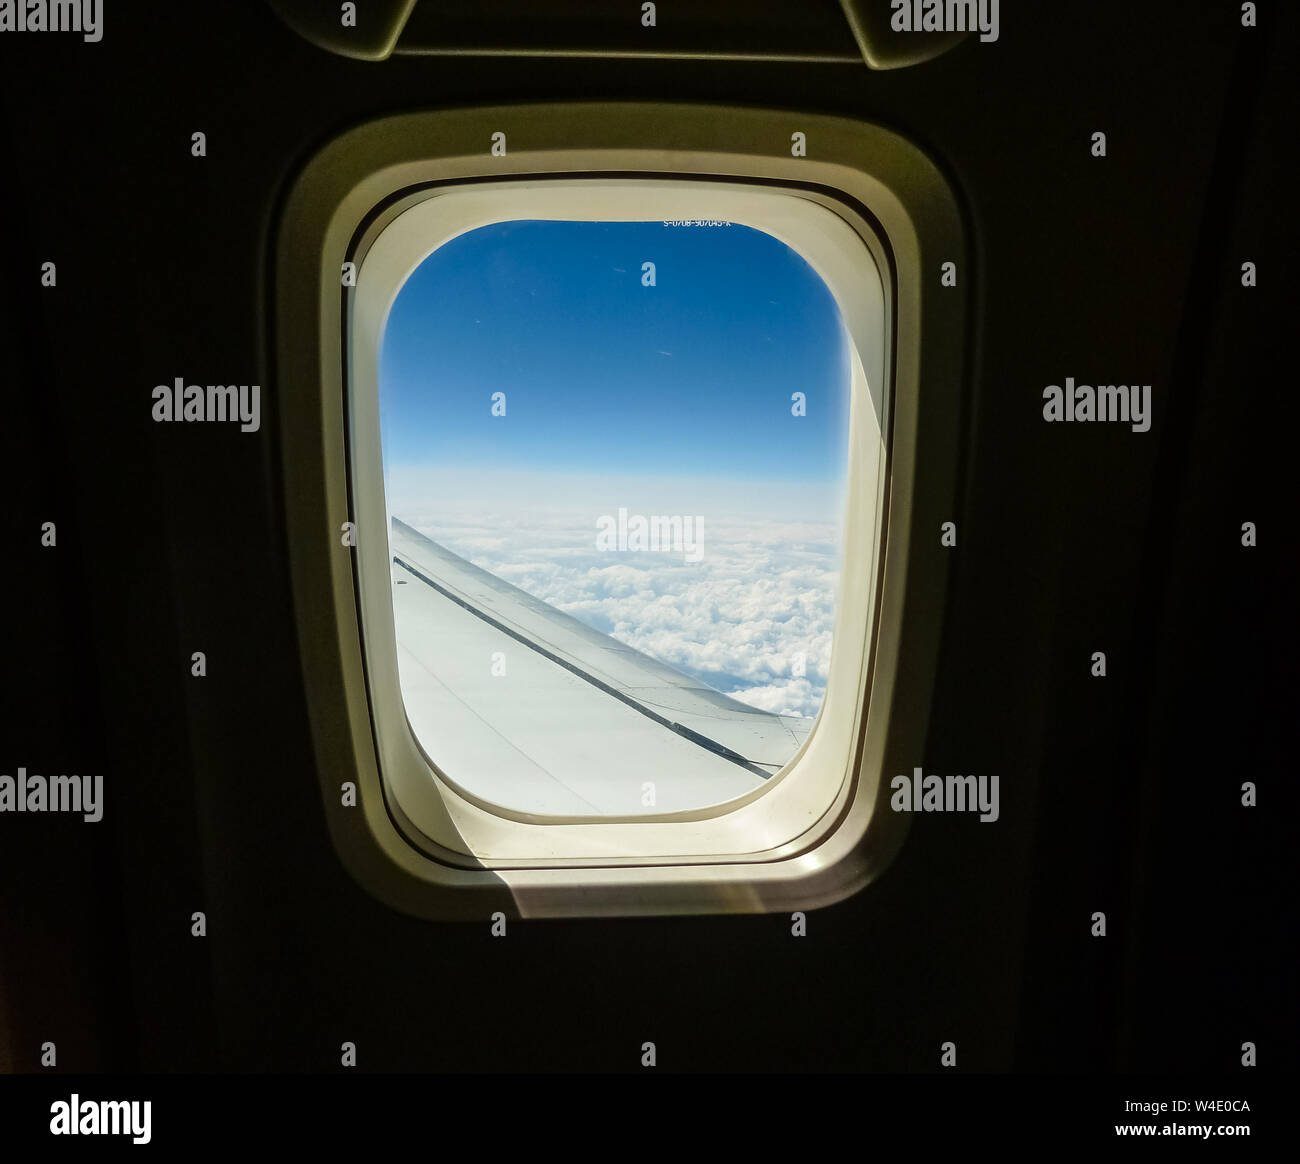 Ventana de aviones con vista aérea de aeronaves de ala y cielo con nubes Foto de stock